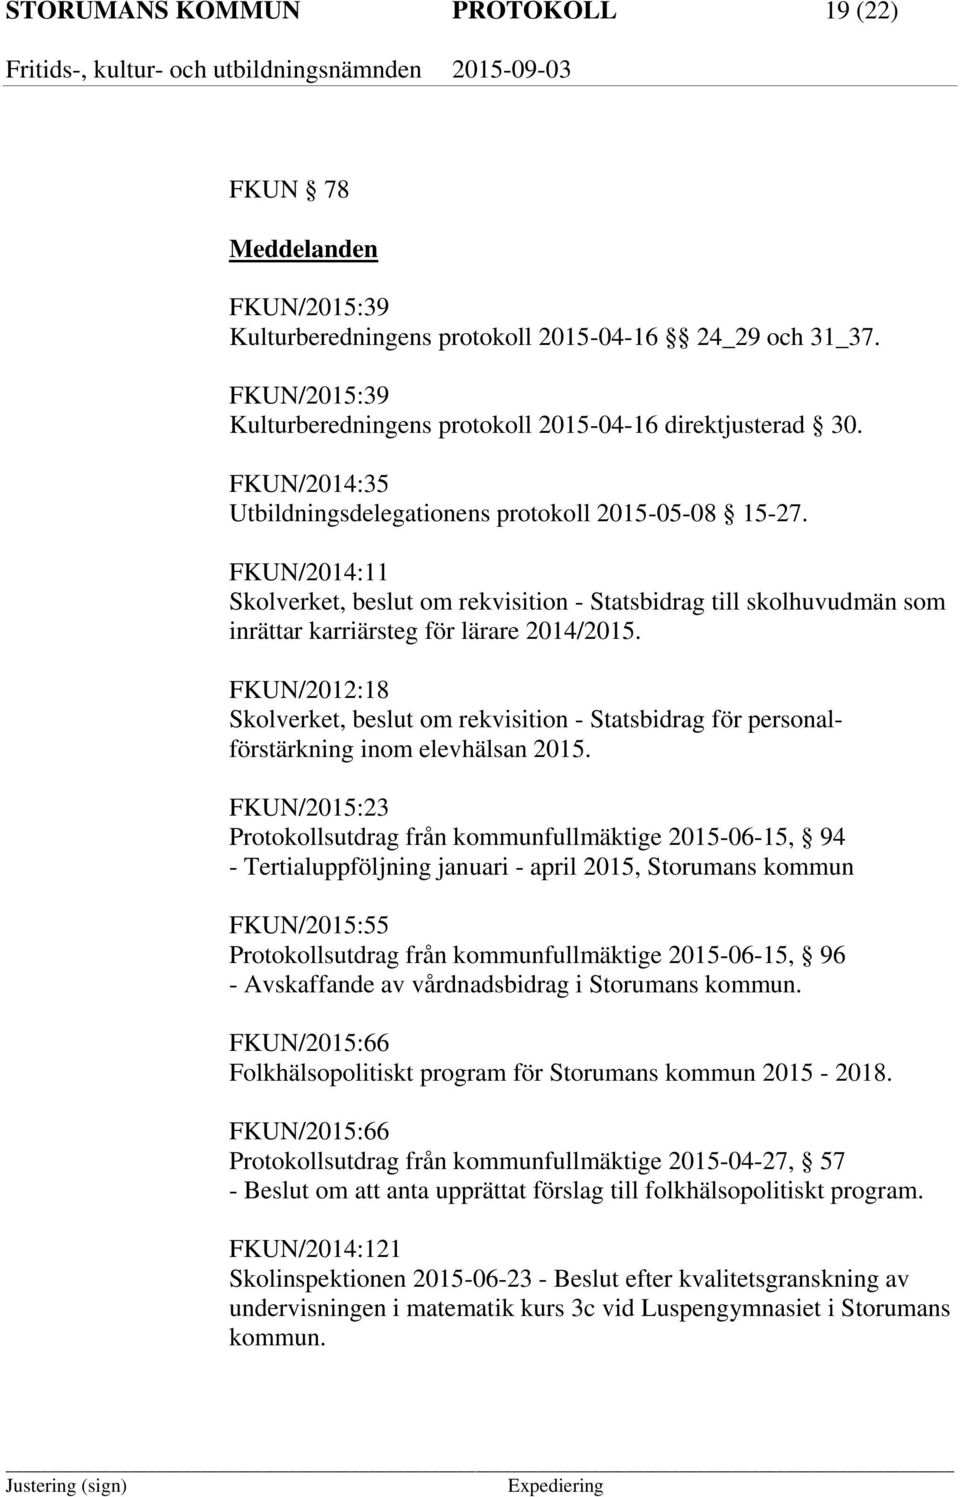 FKUN/2012:18 Skolverket, beslut om rekvisition - Statsbidrag för personalförstärkning inom elevhälsan 2015.